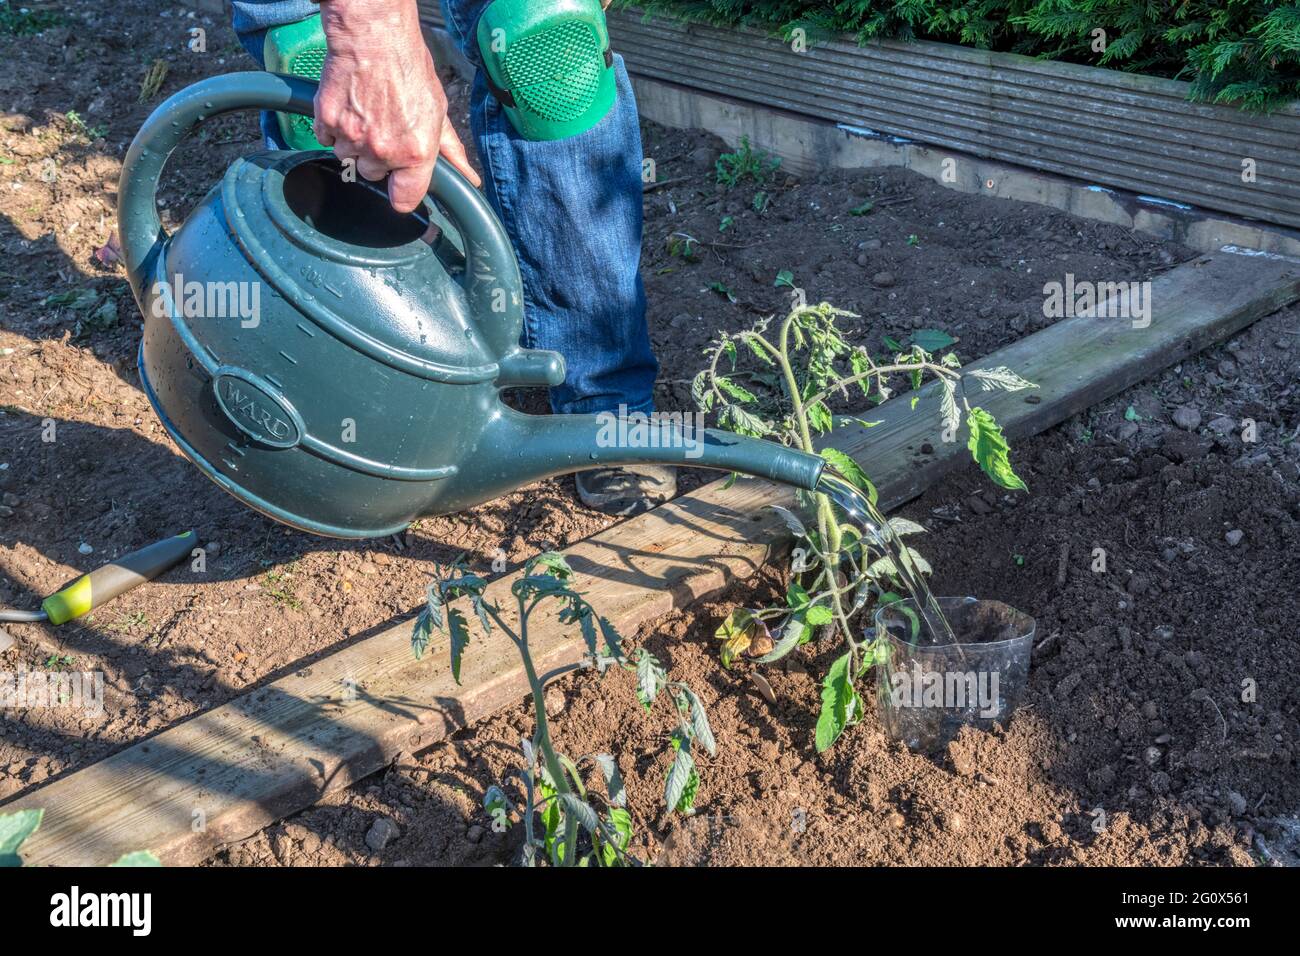 Donna che dirige l'acqua in bottiglia di plastica affondata accanto alle piante di pomodoro appena piantate, per consentire l'irrigazione direttamente intorno alle radici. Foto Stock